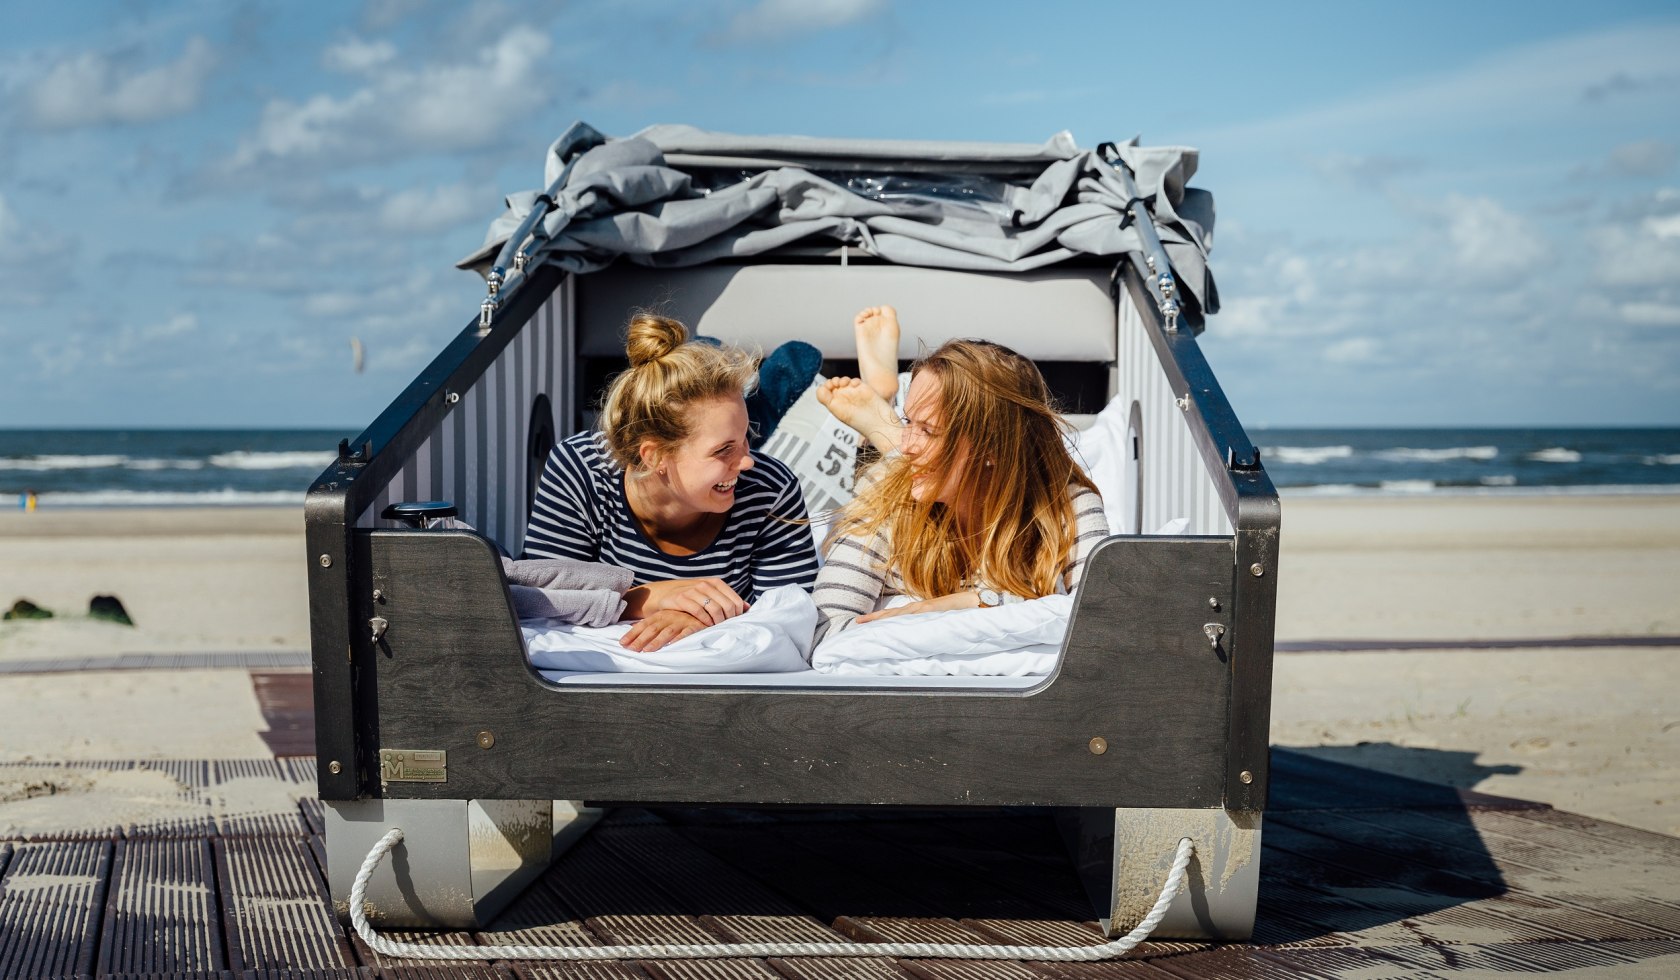 Schlafstrandkorb Norderney in dem zwei Mädchen liegen und sich anlachen, © Staatsbad Norderney GmbH, Janis Meyer